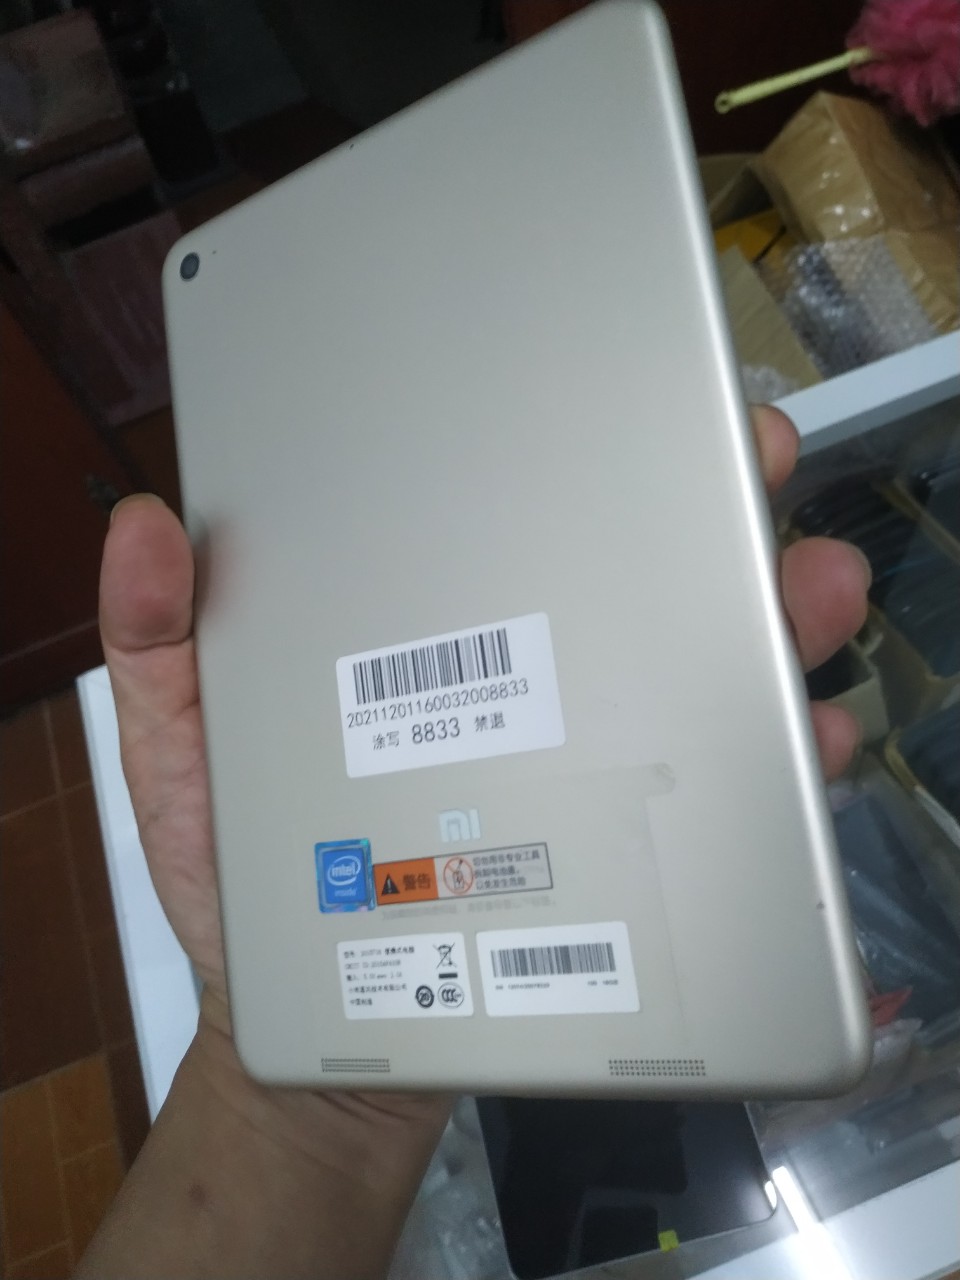 Máy Tính Bảng giá rẻ Xiaomi Mipad 2 Chính Hãng - Màn hình rộng:7.9 inch (326 ppi), cấu hình siêu...